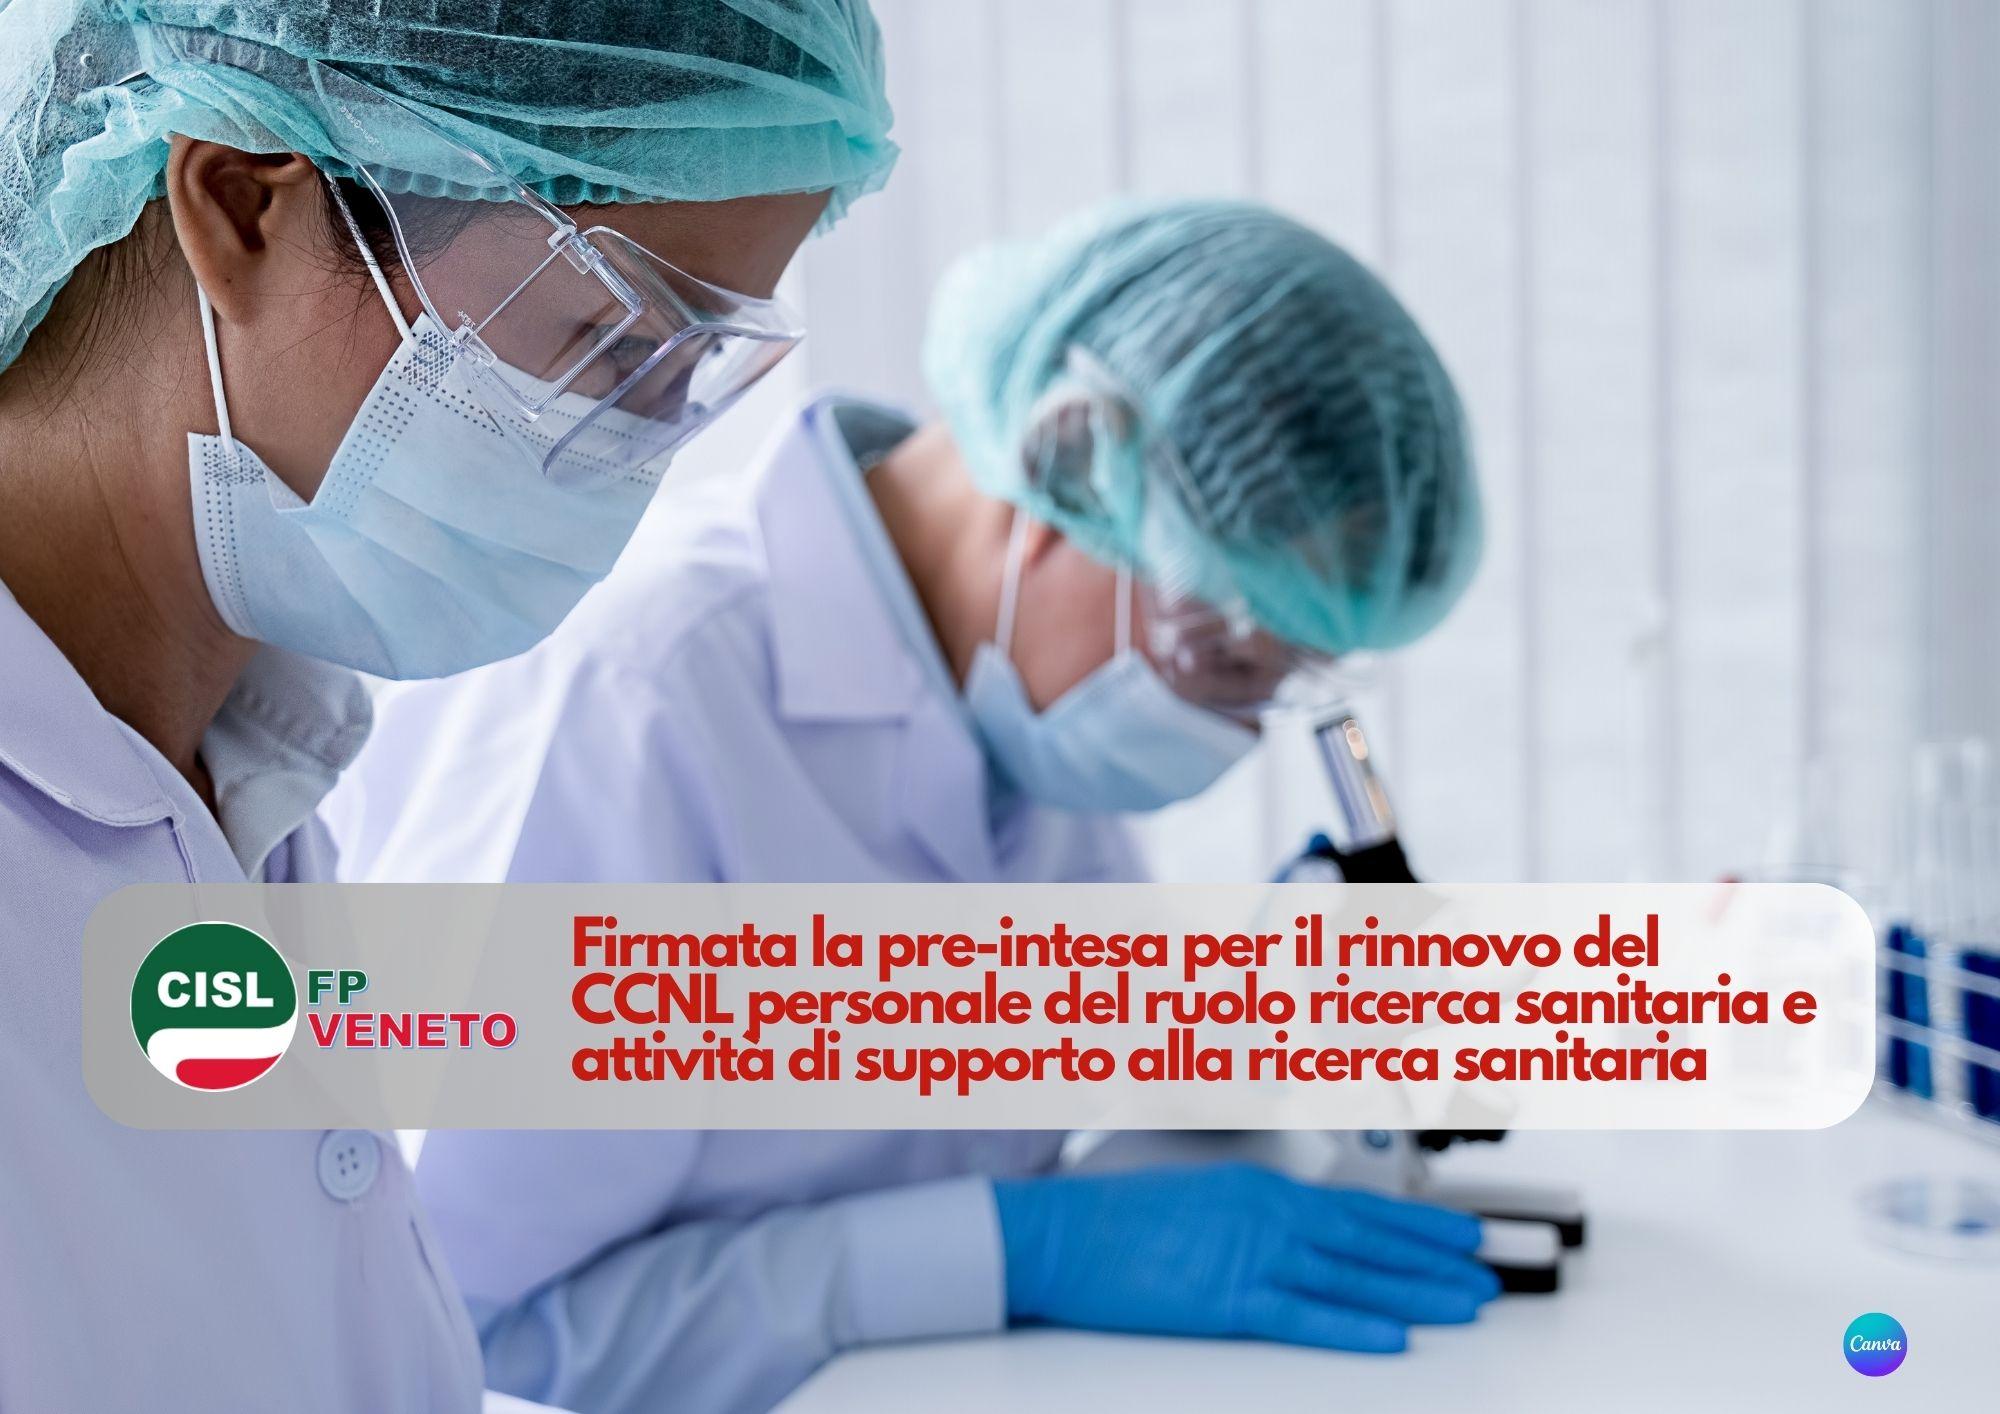 CISL FP Veneto. Firmata la pre-intesa per il rinnovo del CCNL personale del ruolo ricerca sanitaria attività di supporto alla ricerca sanitaria